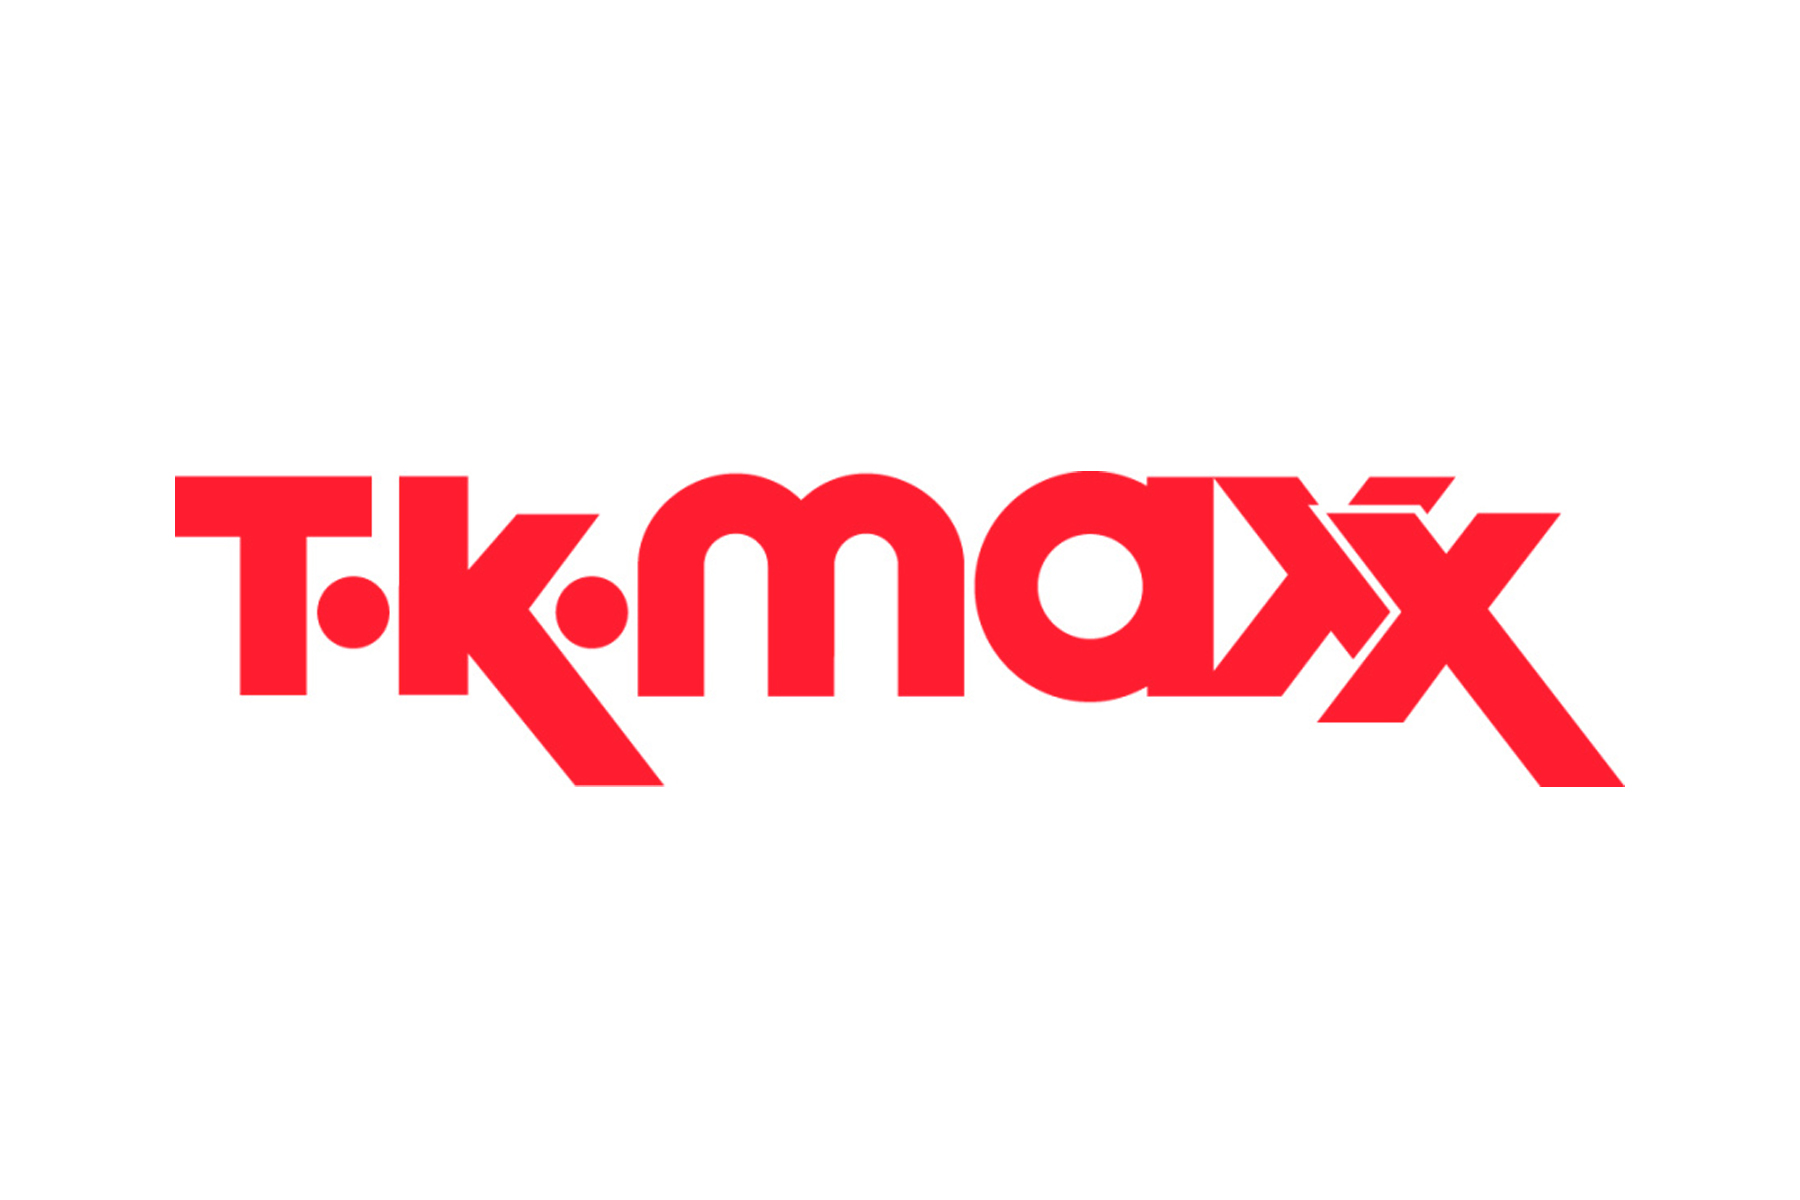 tkmaxx logo.jpg